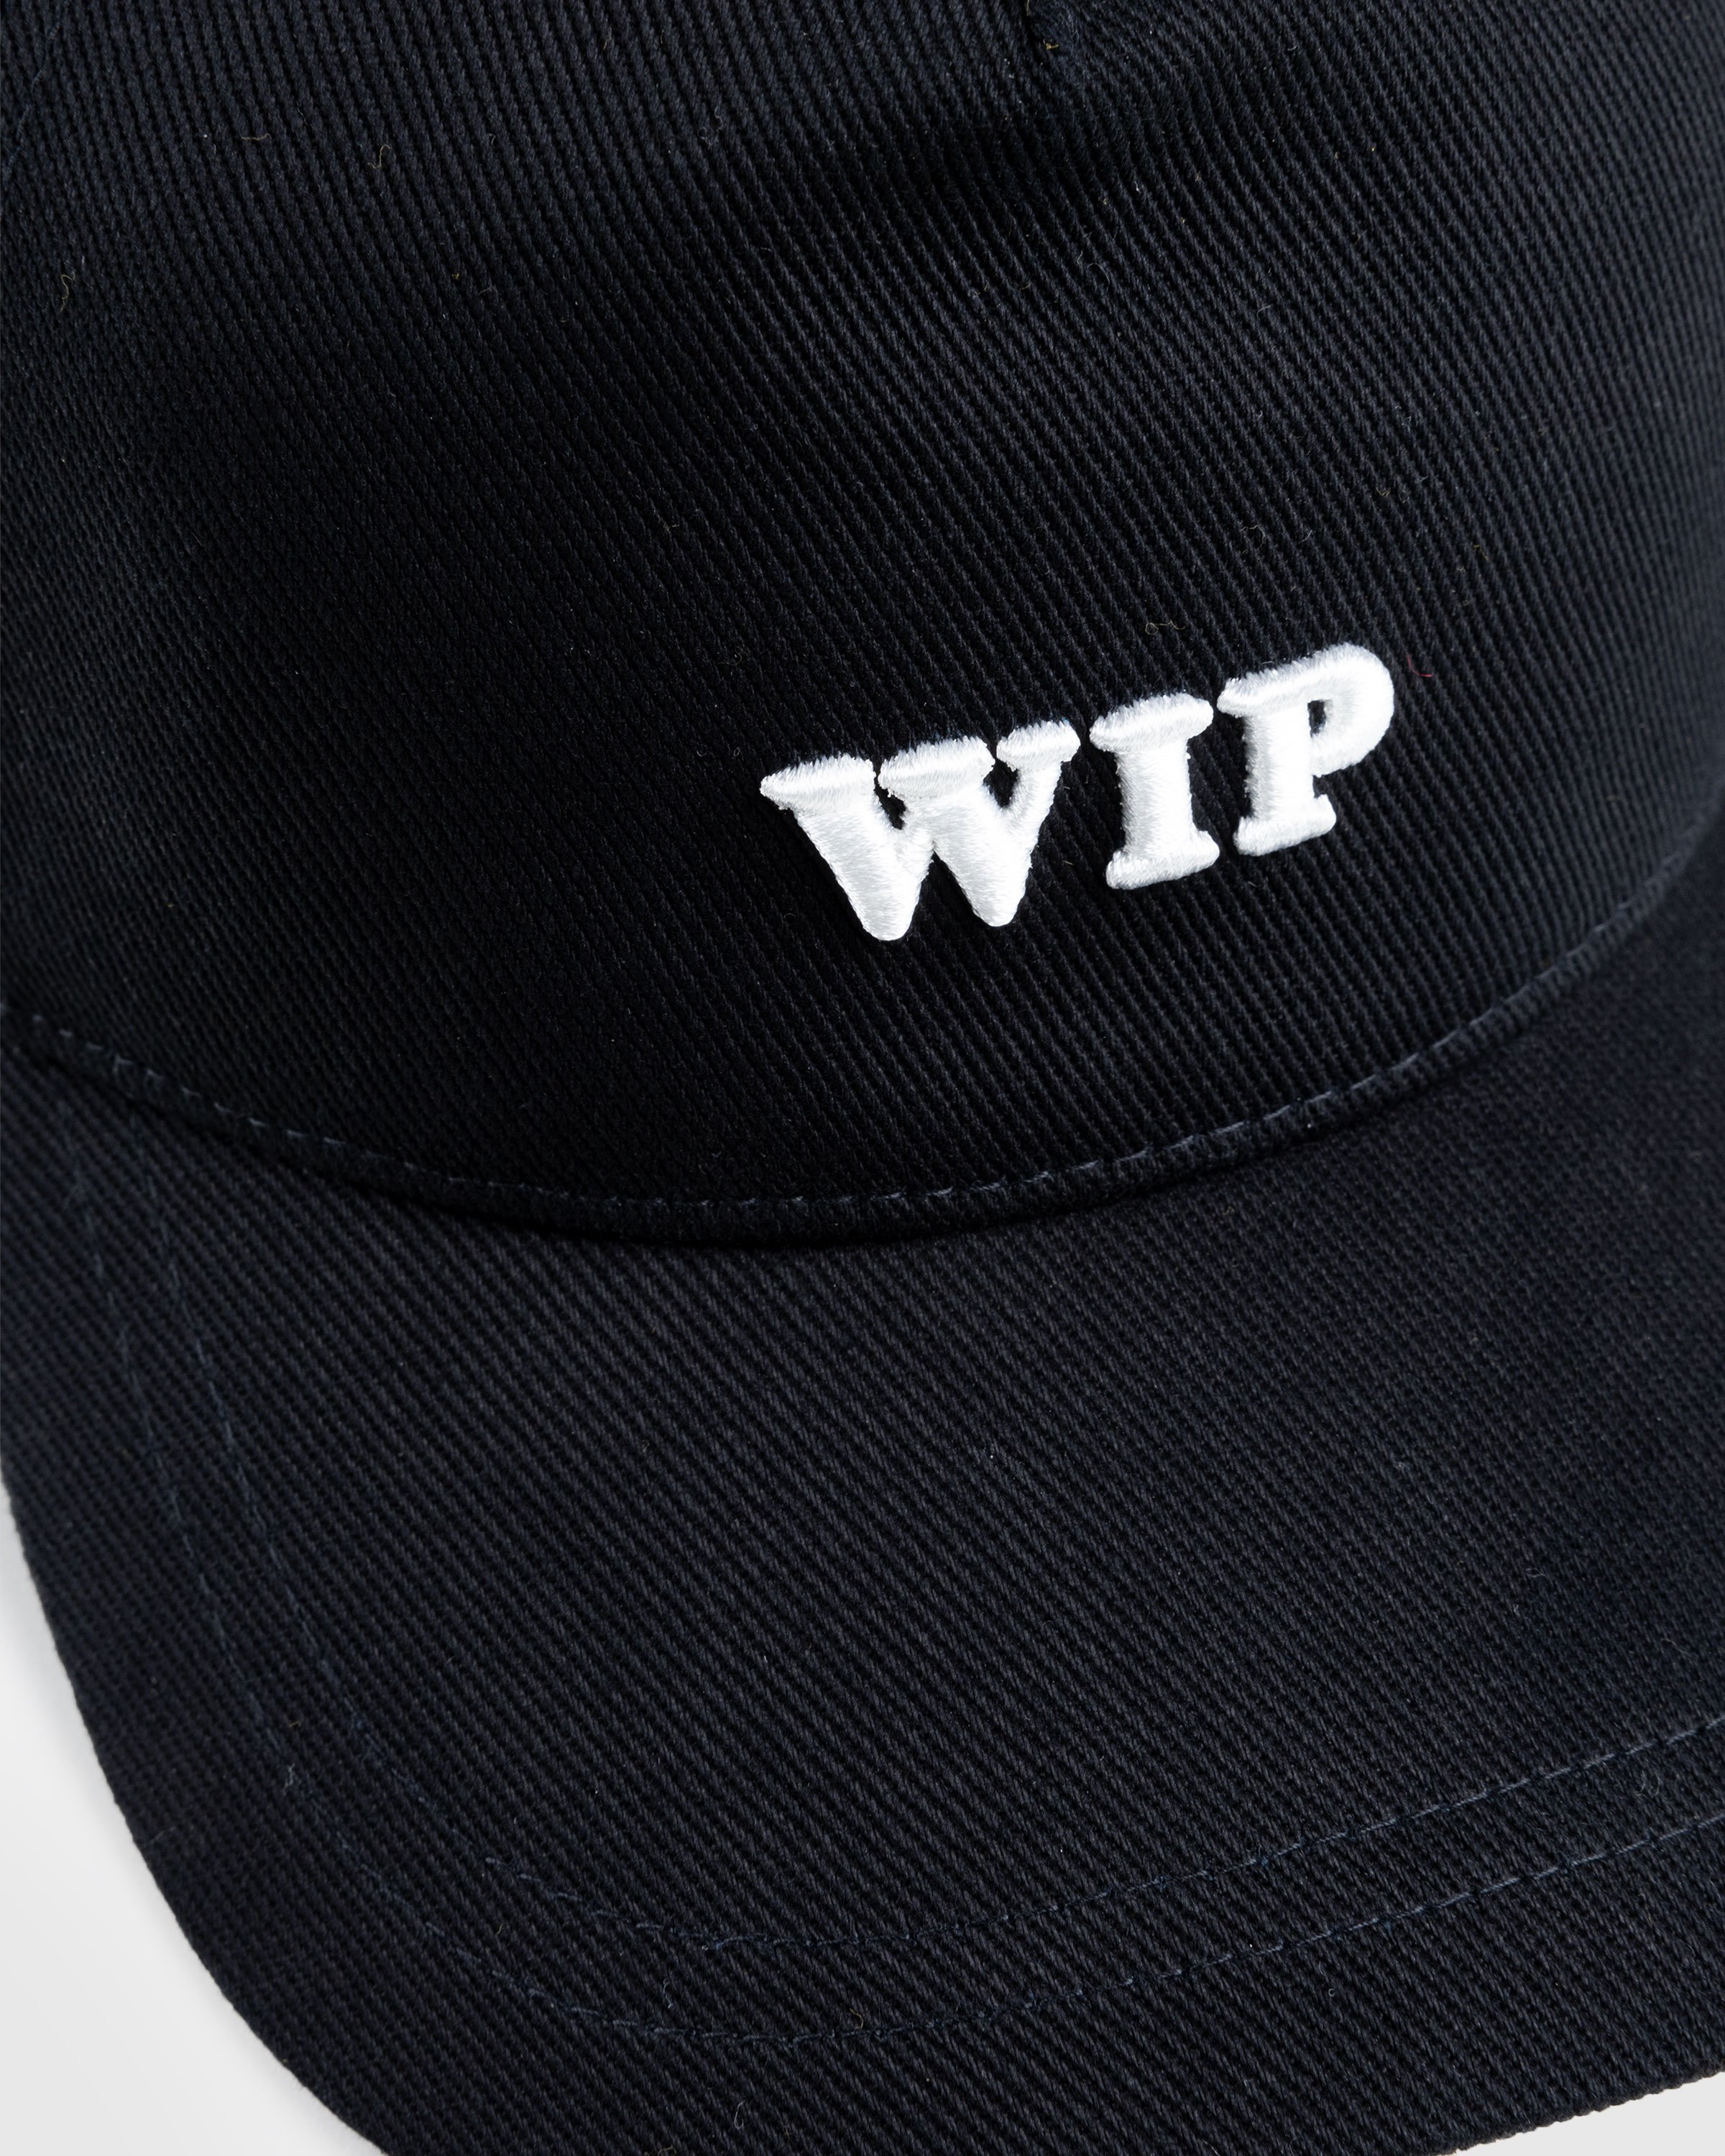 Carhartt WIP - WIP Cap Black - Accessories - Black - Image 5